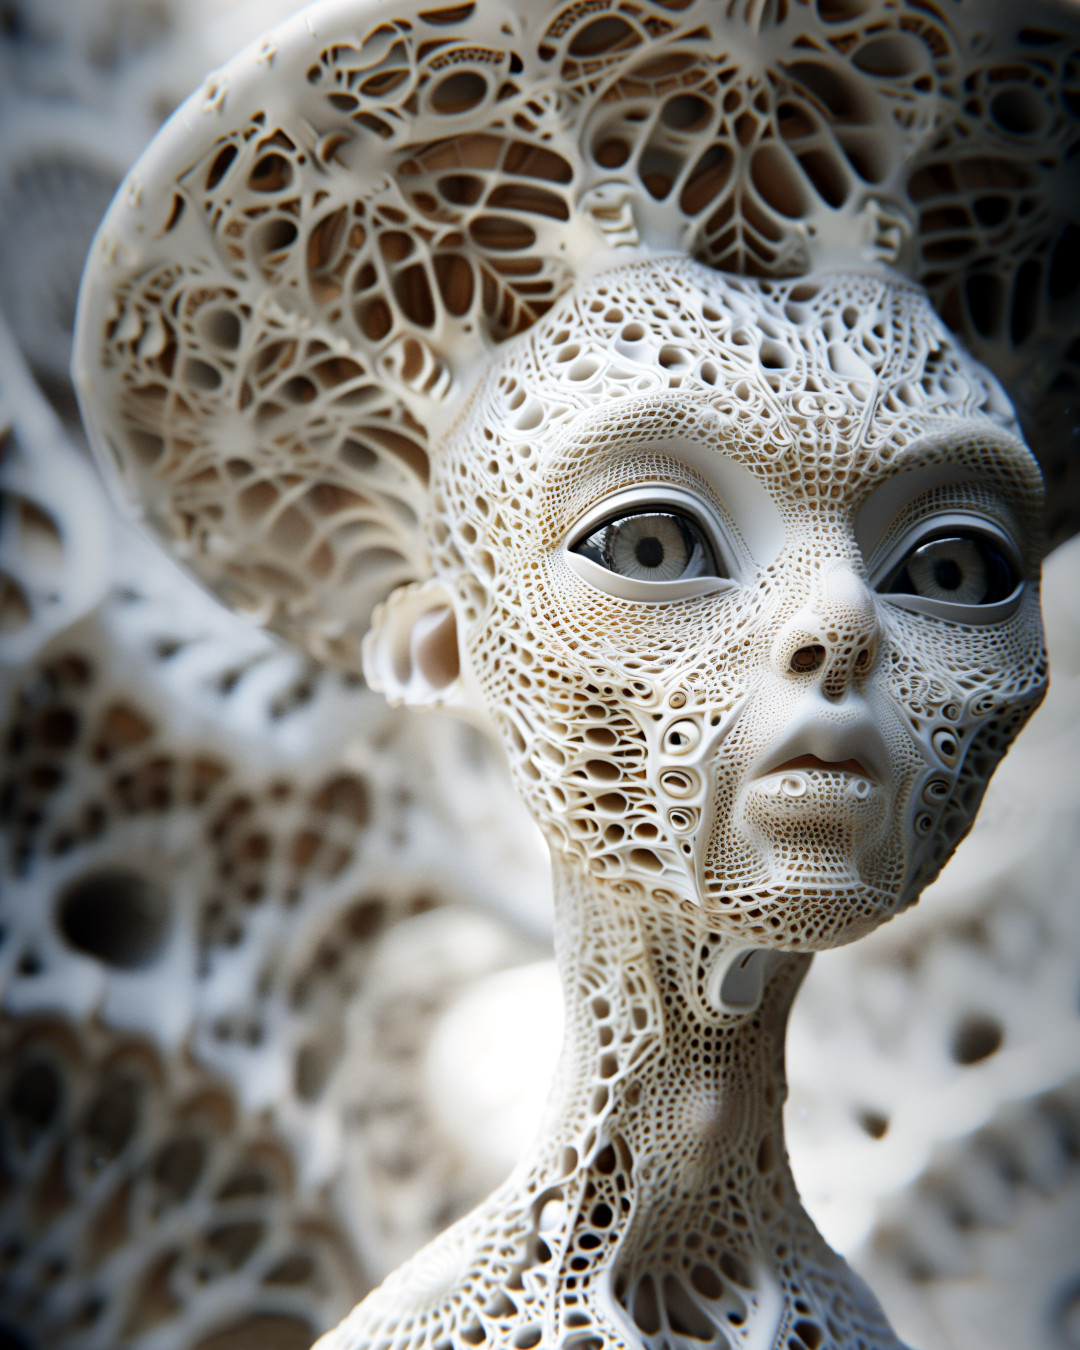 Alien made of white porcelain, organic latticework, strange environment